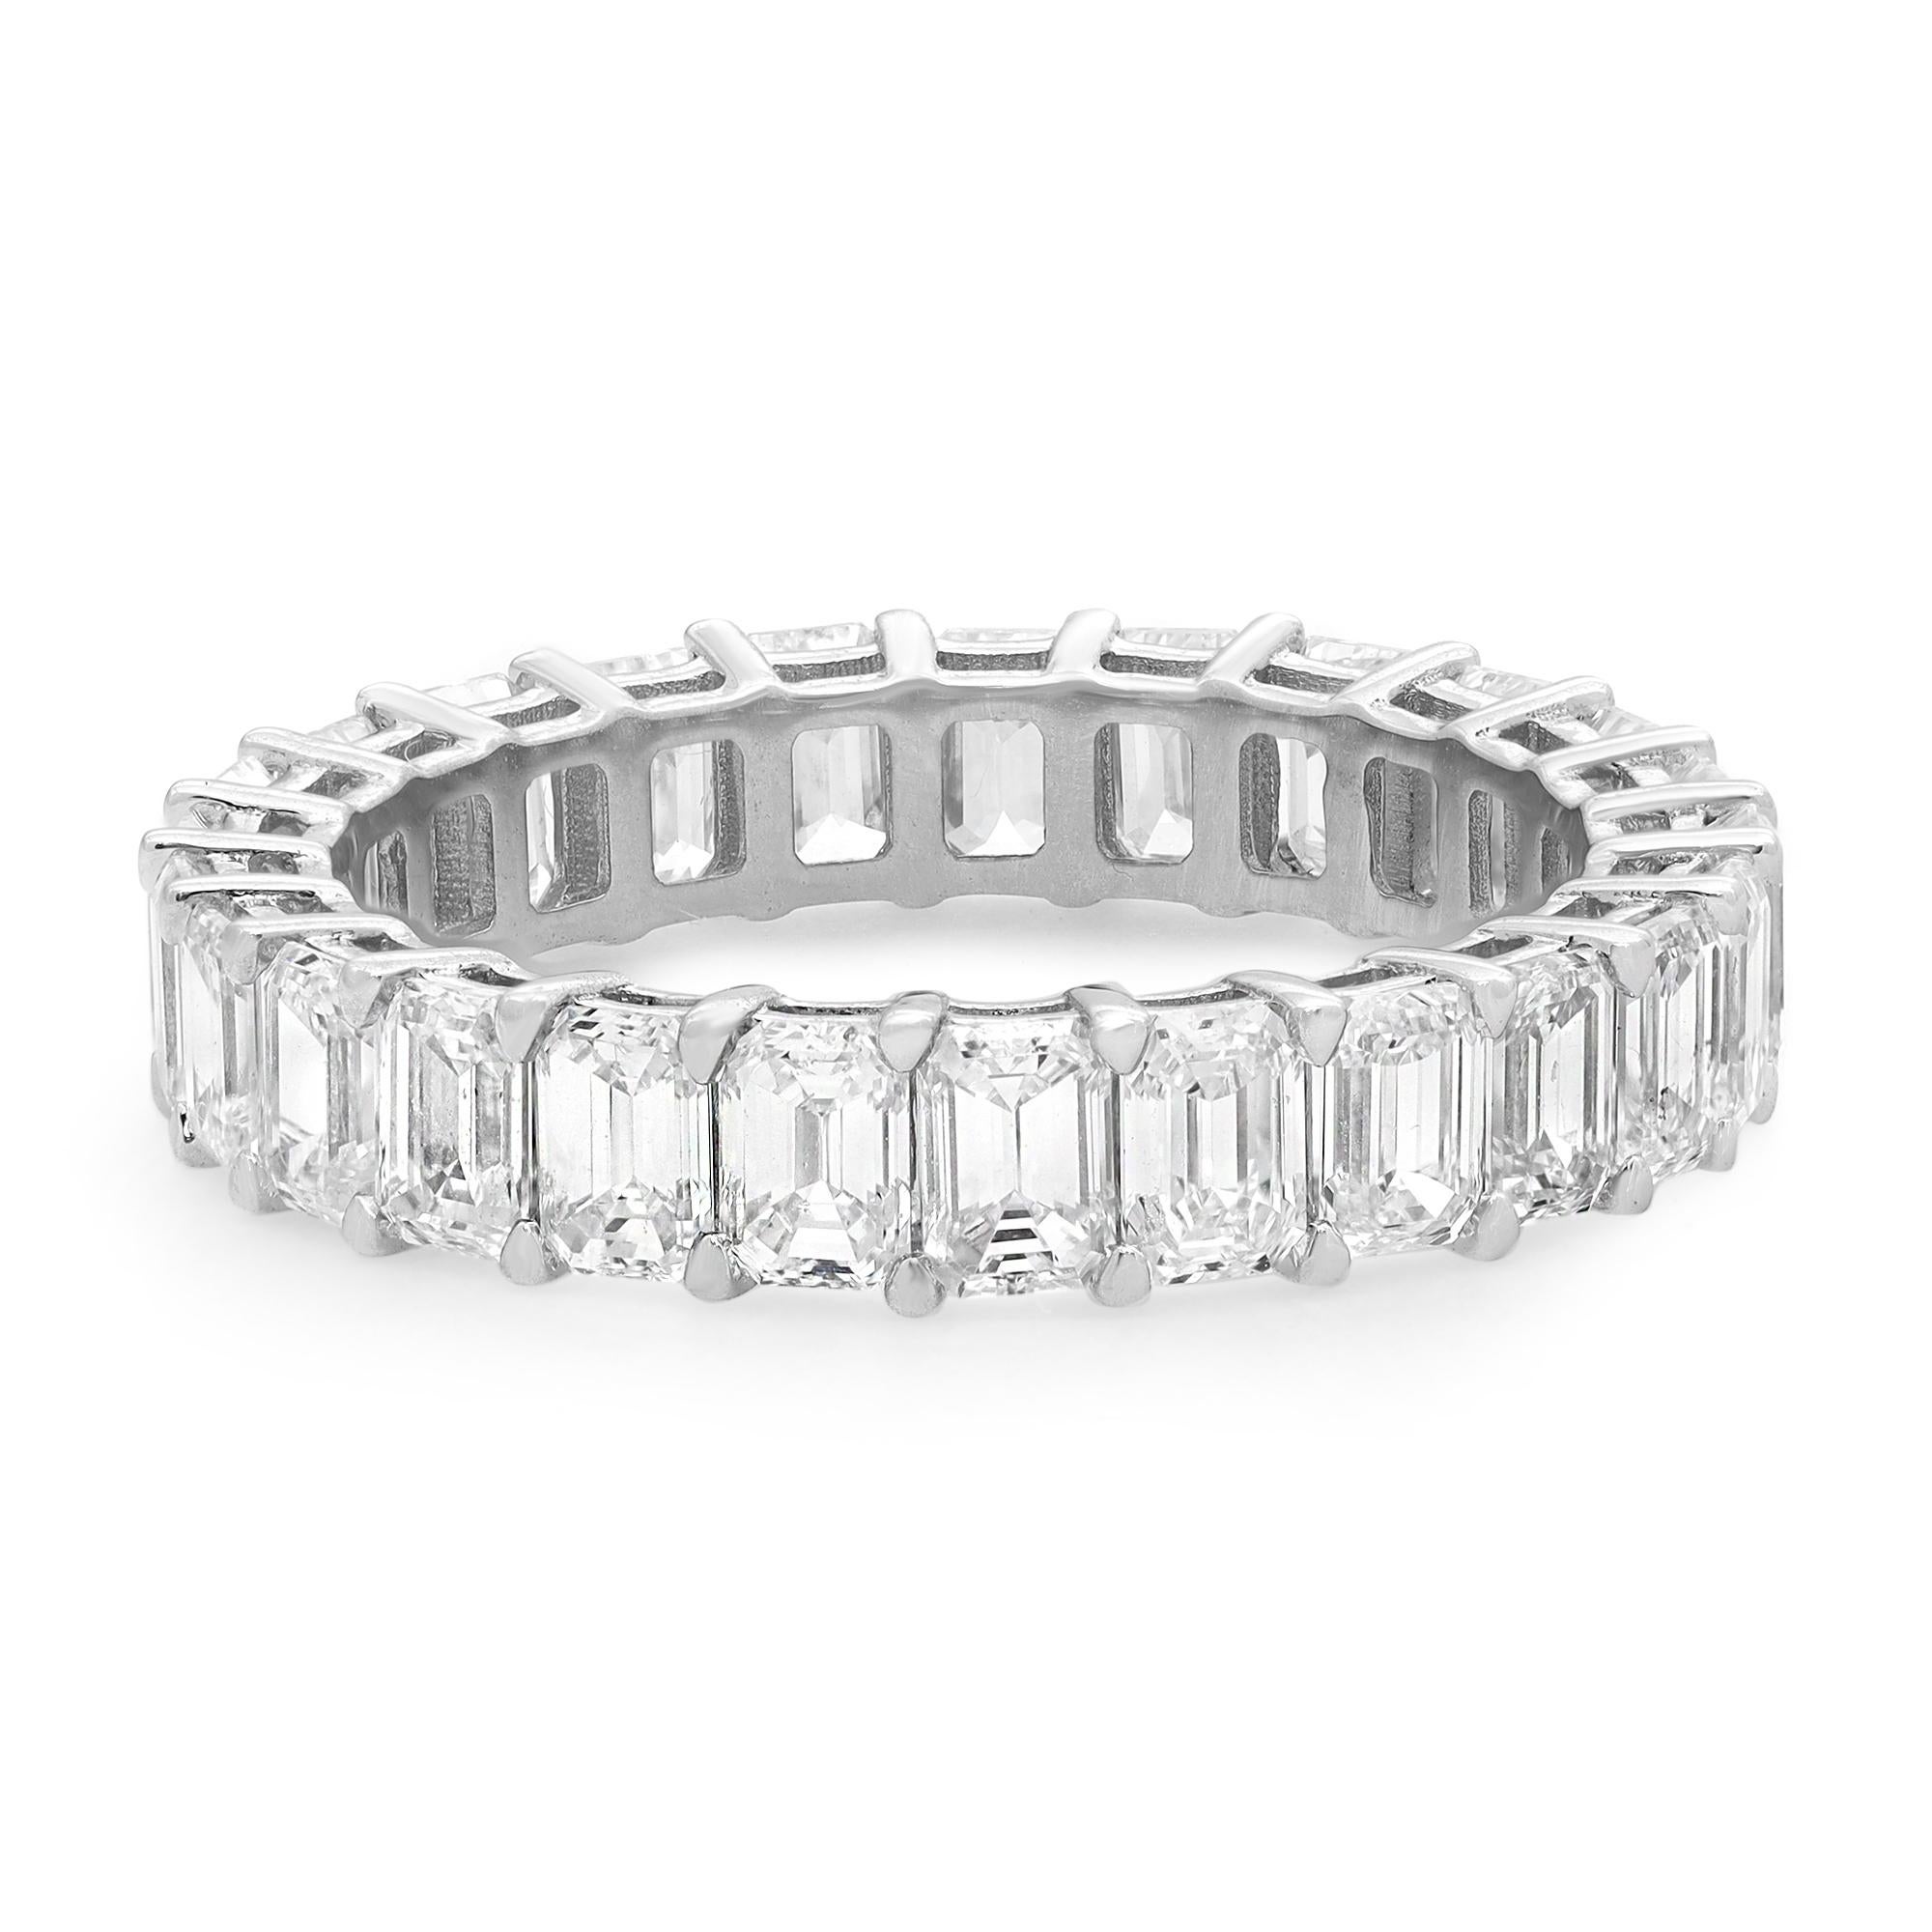 Dieser klassische Diamantring für die Ewigkeit ist eine auffällige Ergänzung Ihrer Schmucksammlung. Er verfügt über 25 in Zacken gefasste funkelnde Diamanten im Smaragdschliff, die in ein Band aus 18 Karat Weißgold eingefasst sind. Gesamtgewicht der